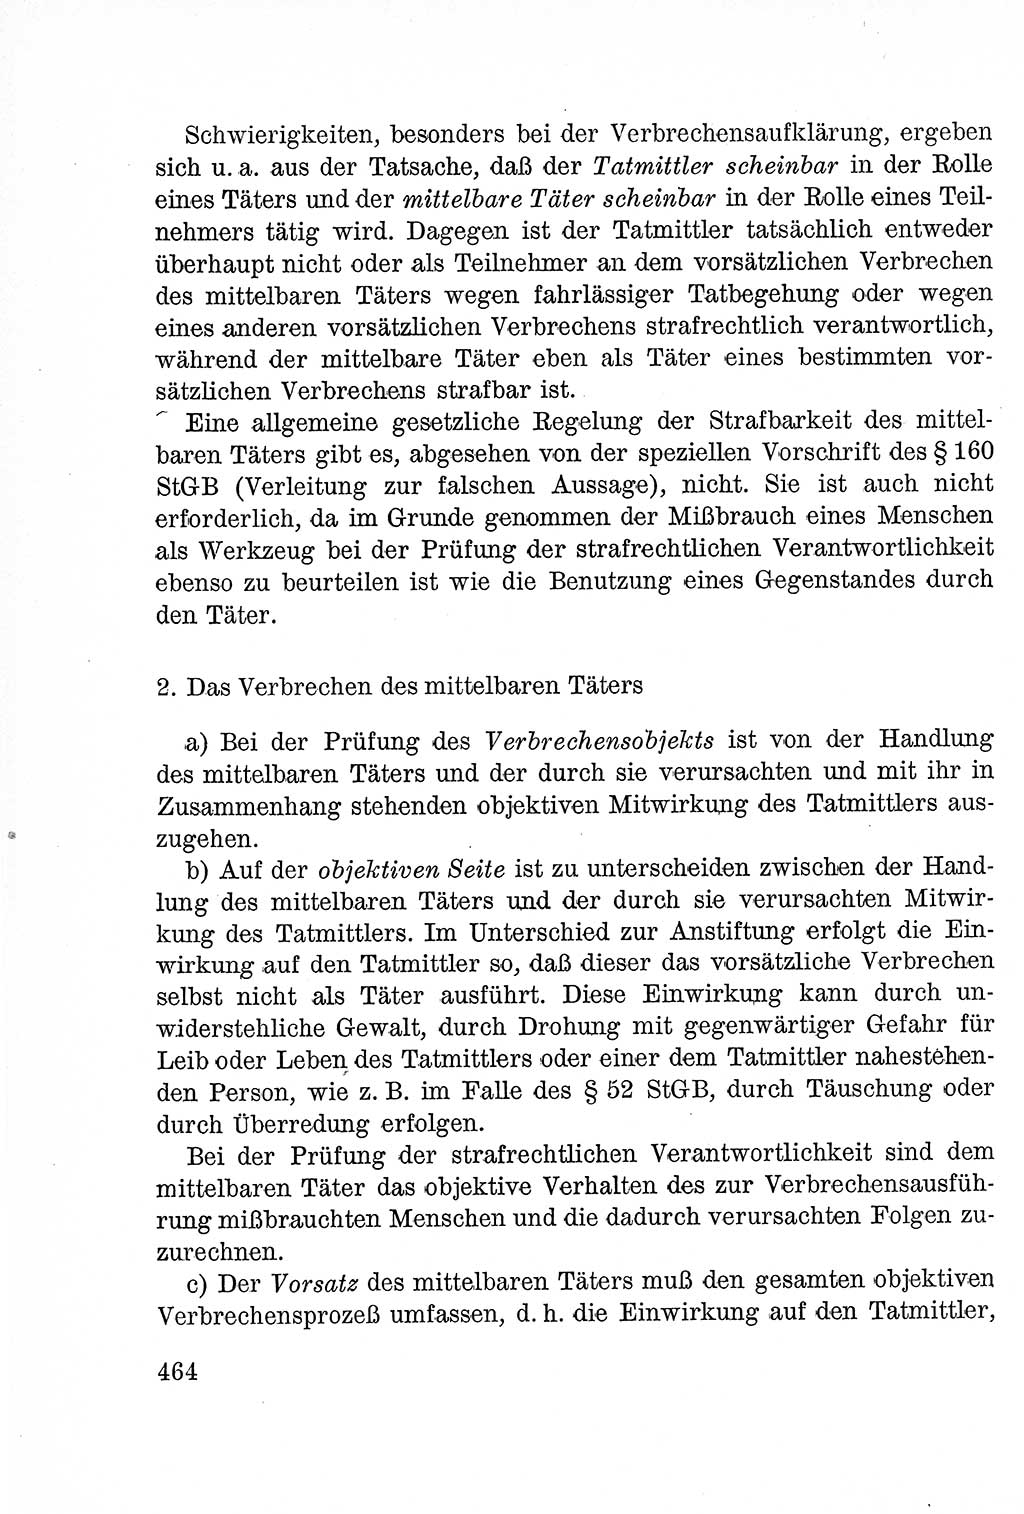 Lehrbuch des Strafrechts der Deutschen Demokratischen Republik (DDR), Allgemeiner Teil 1957, Seite 464 (Lb. Strafr. DDR AT 1957, S. 464)